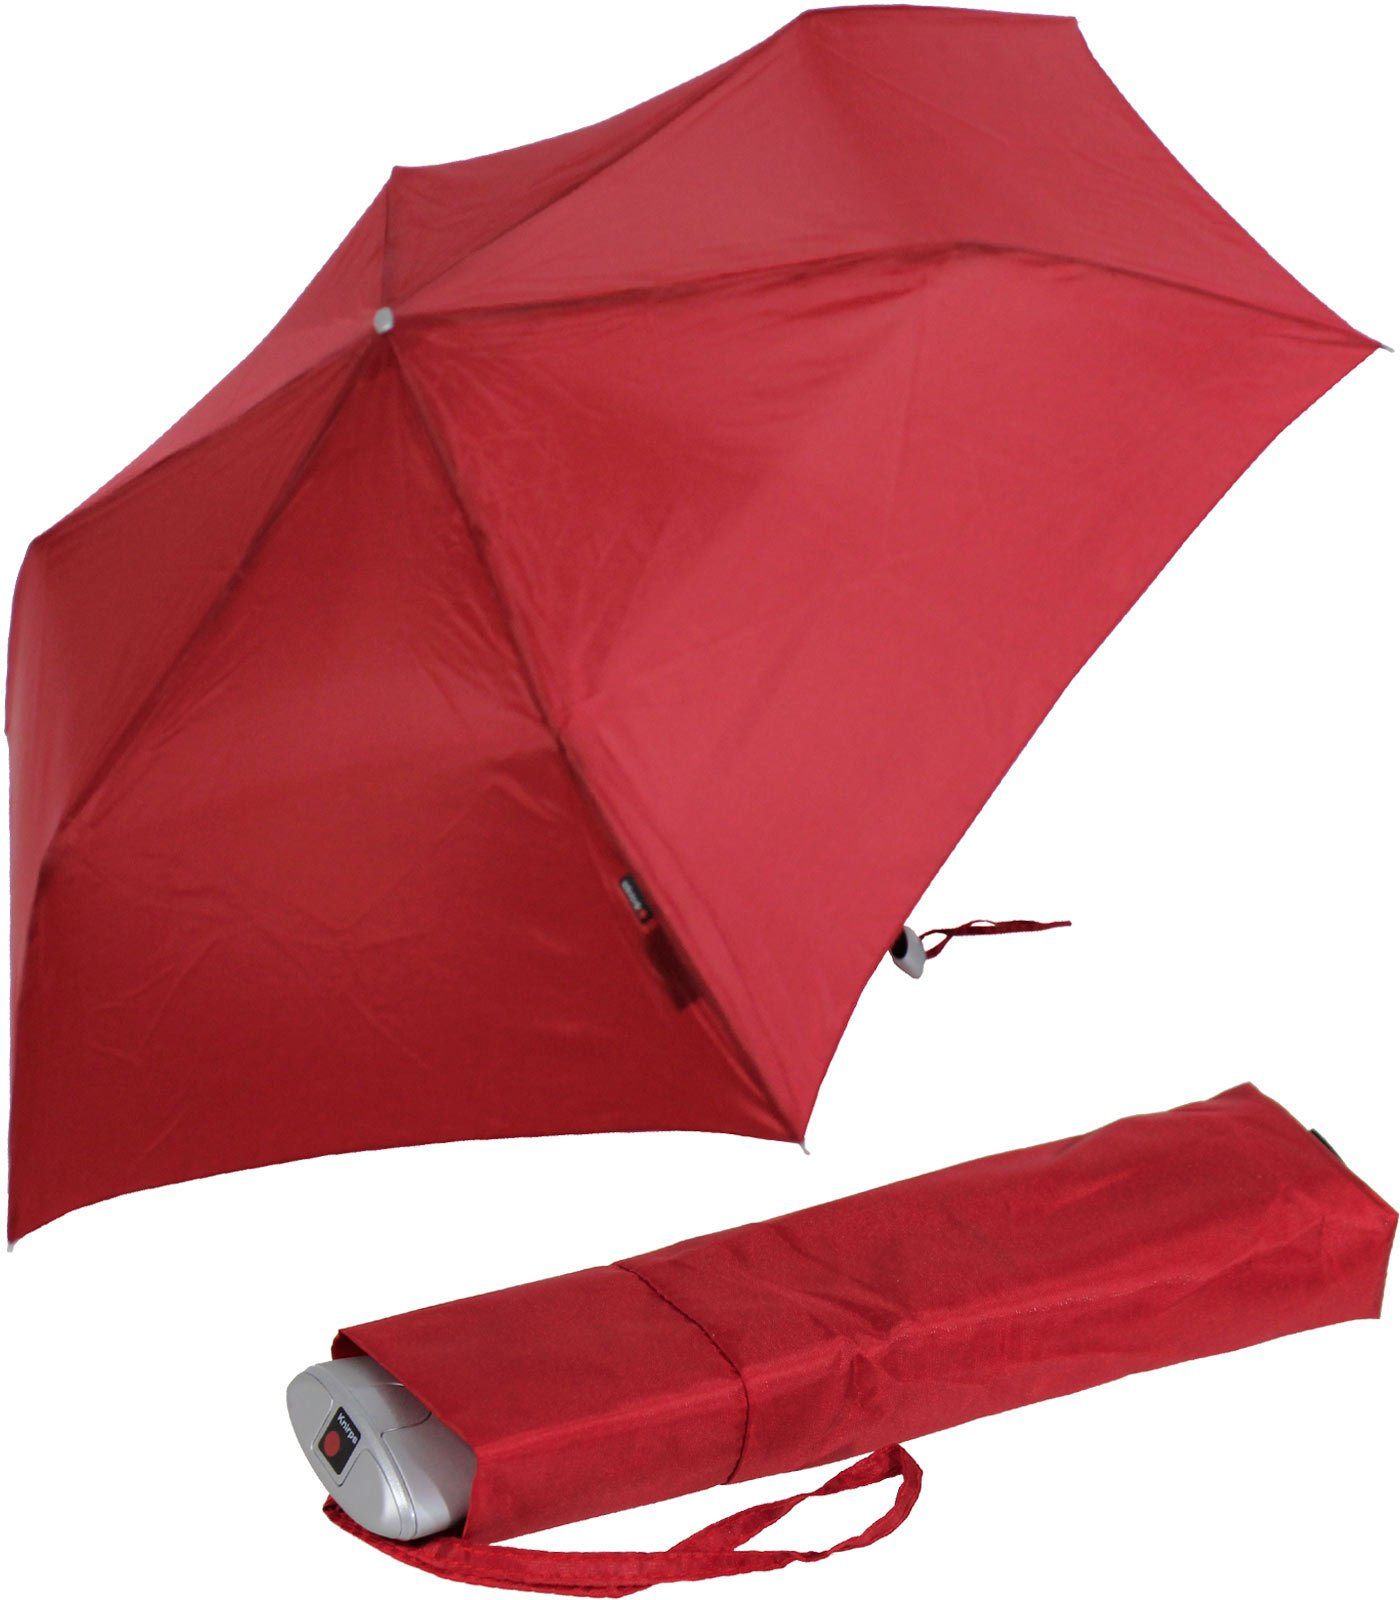 stabiler für flacher, Begleiter, Tasche, Knirps® für jeden Taschenregenschirm treuer passend Schirm, Notfall jede ein